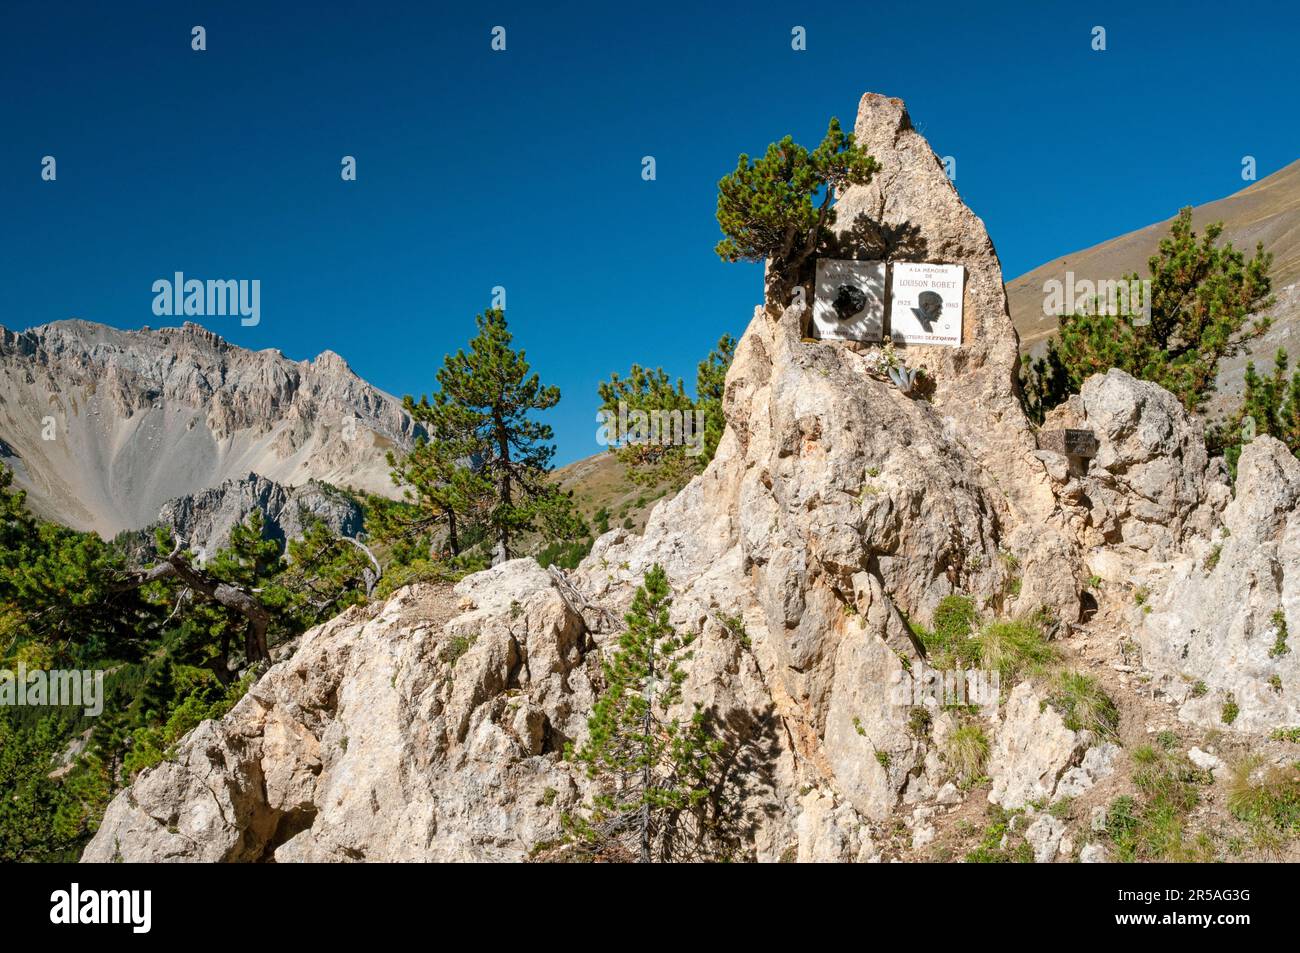 Panneaux commémoratifs à la mémoire des cyclistes Louison Bobet et Fausto Coppi au point de chasse Deserte, col de montagne Izoard, France Banque D'Images